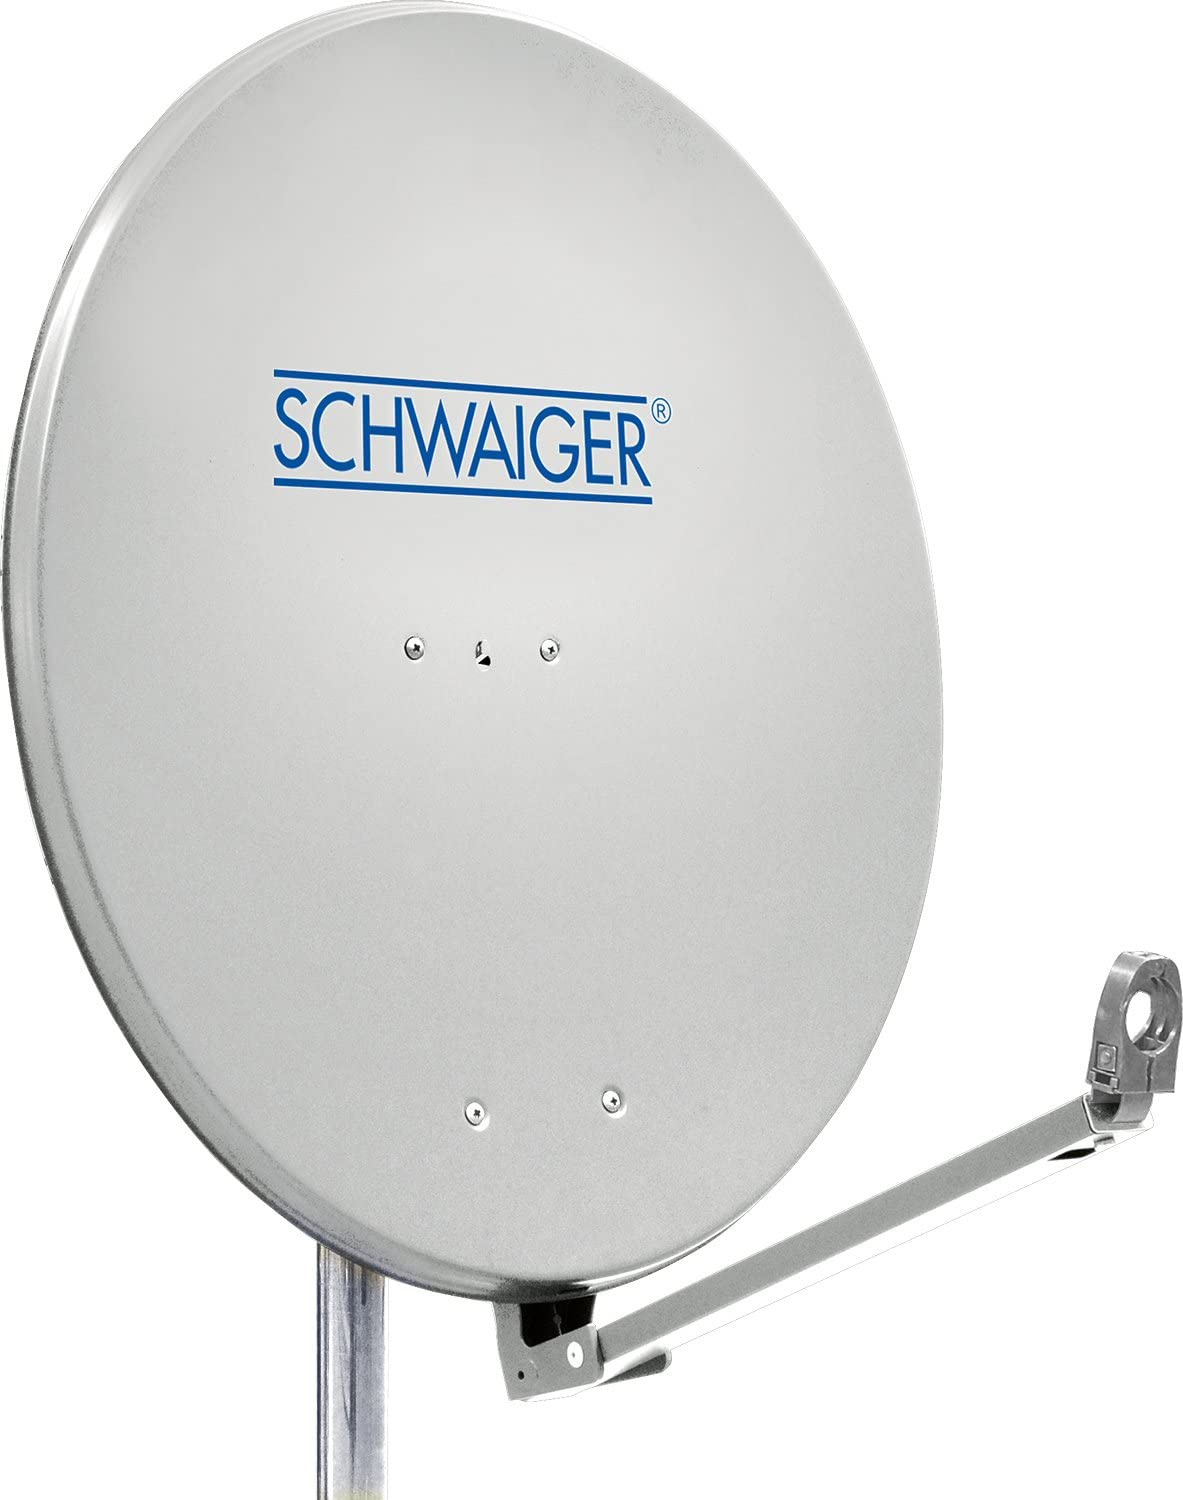 SCHWAIGER -SPI910.0- Aluminium 88 Offset cm) Antenne (Ø